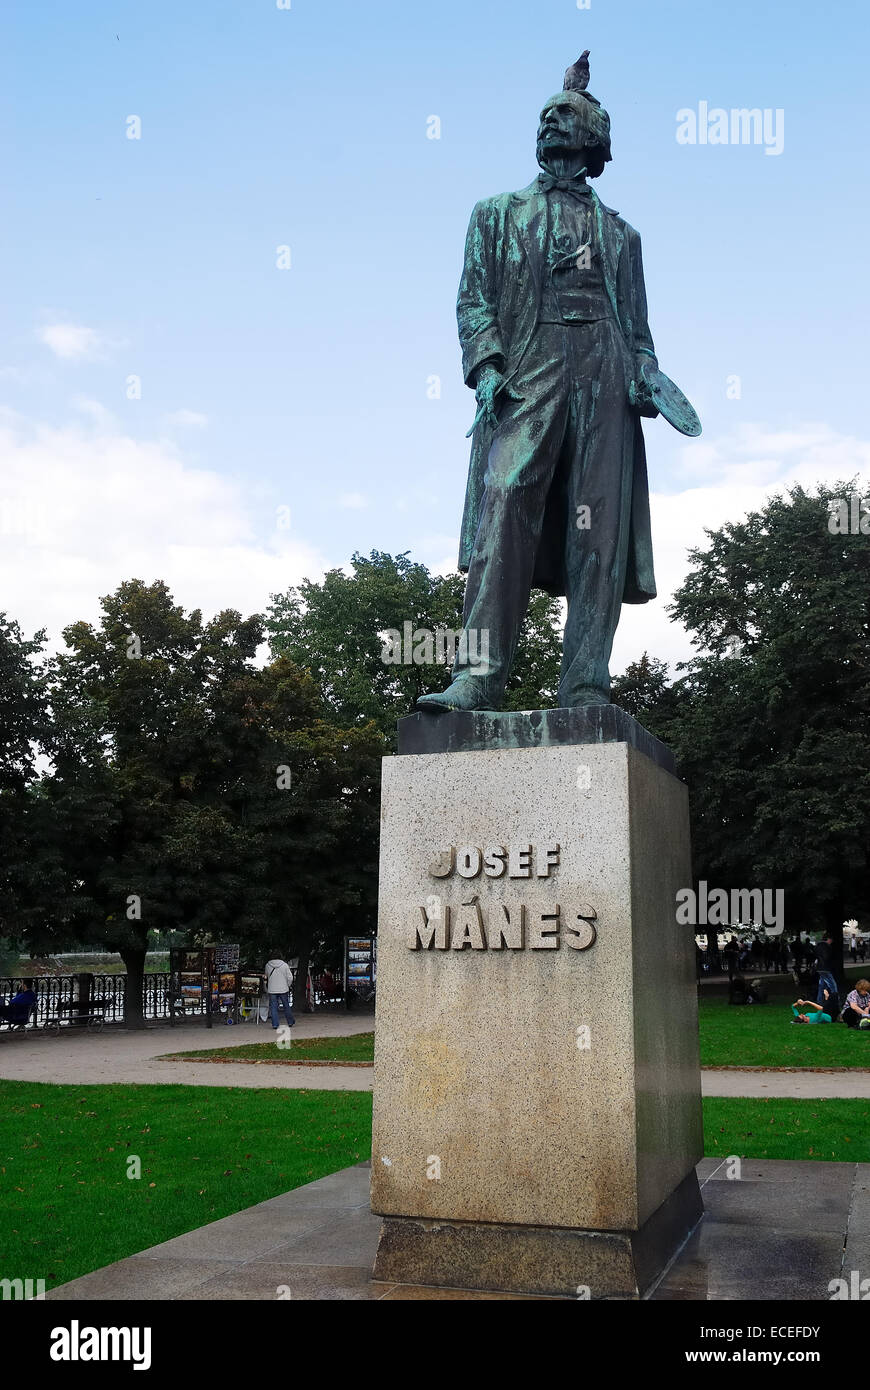 Czech Republic. Prague. The branze statue of Josef manes. Josef Mánes(12 May 1820, Prague - 9 December 1871, Prague) was a Czech painter. Stock Photo